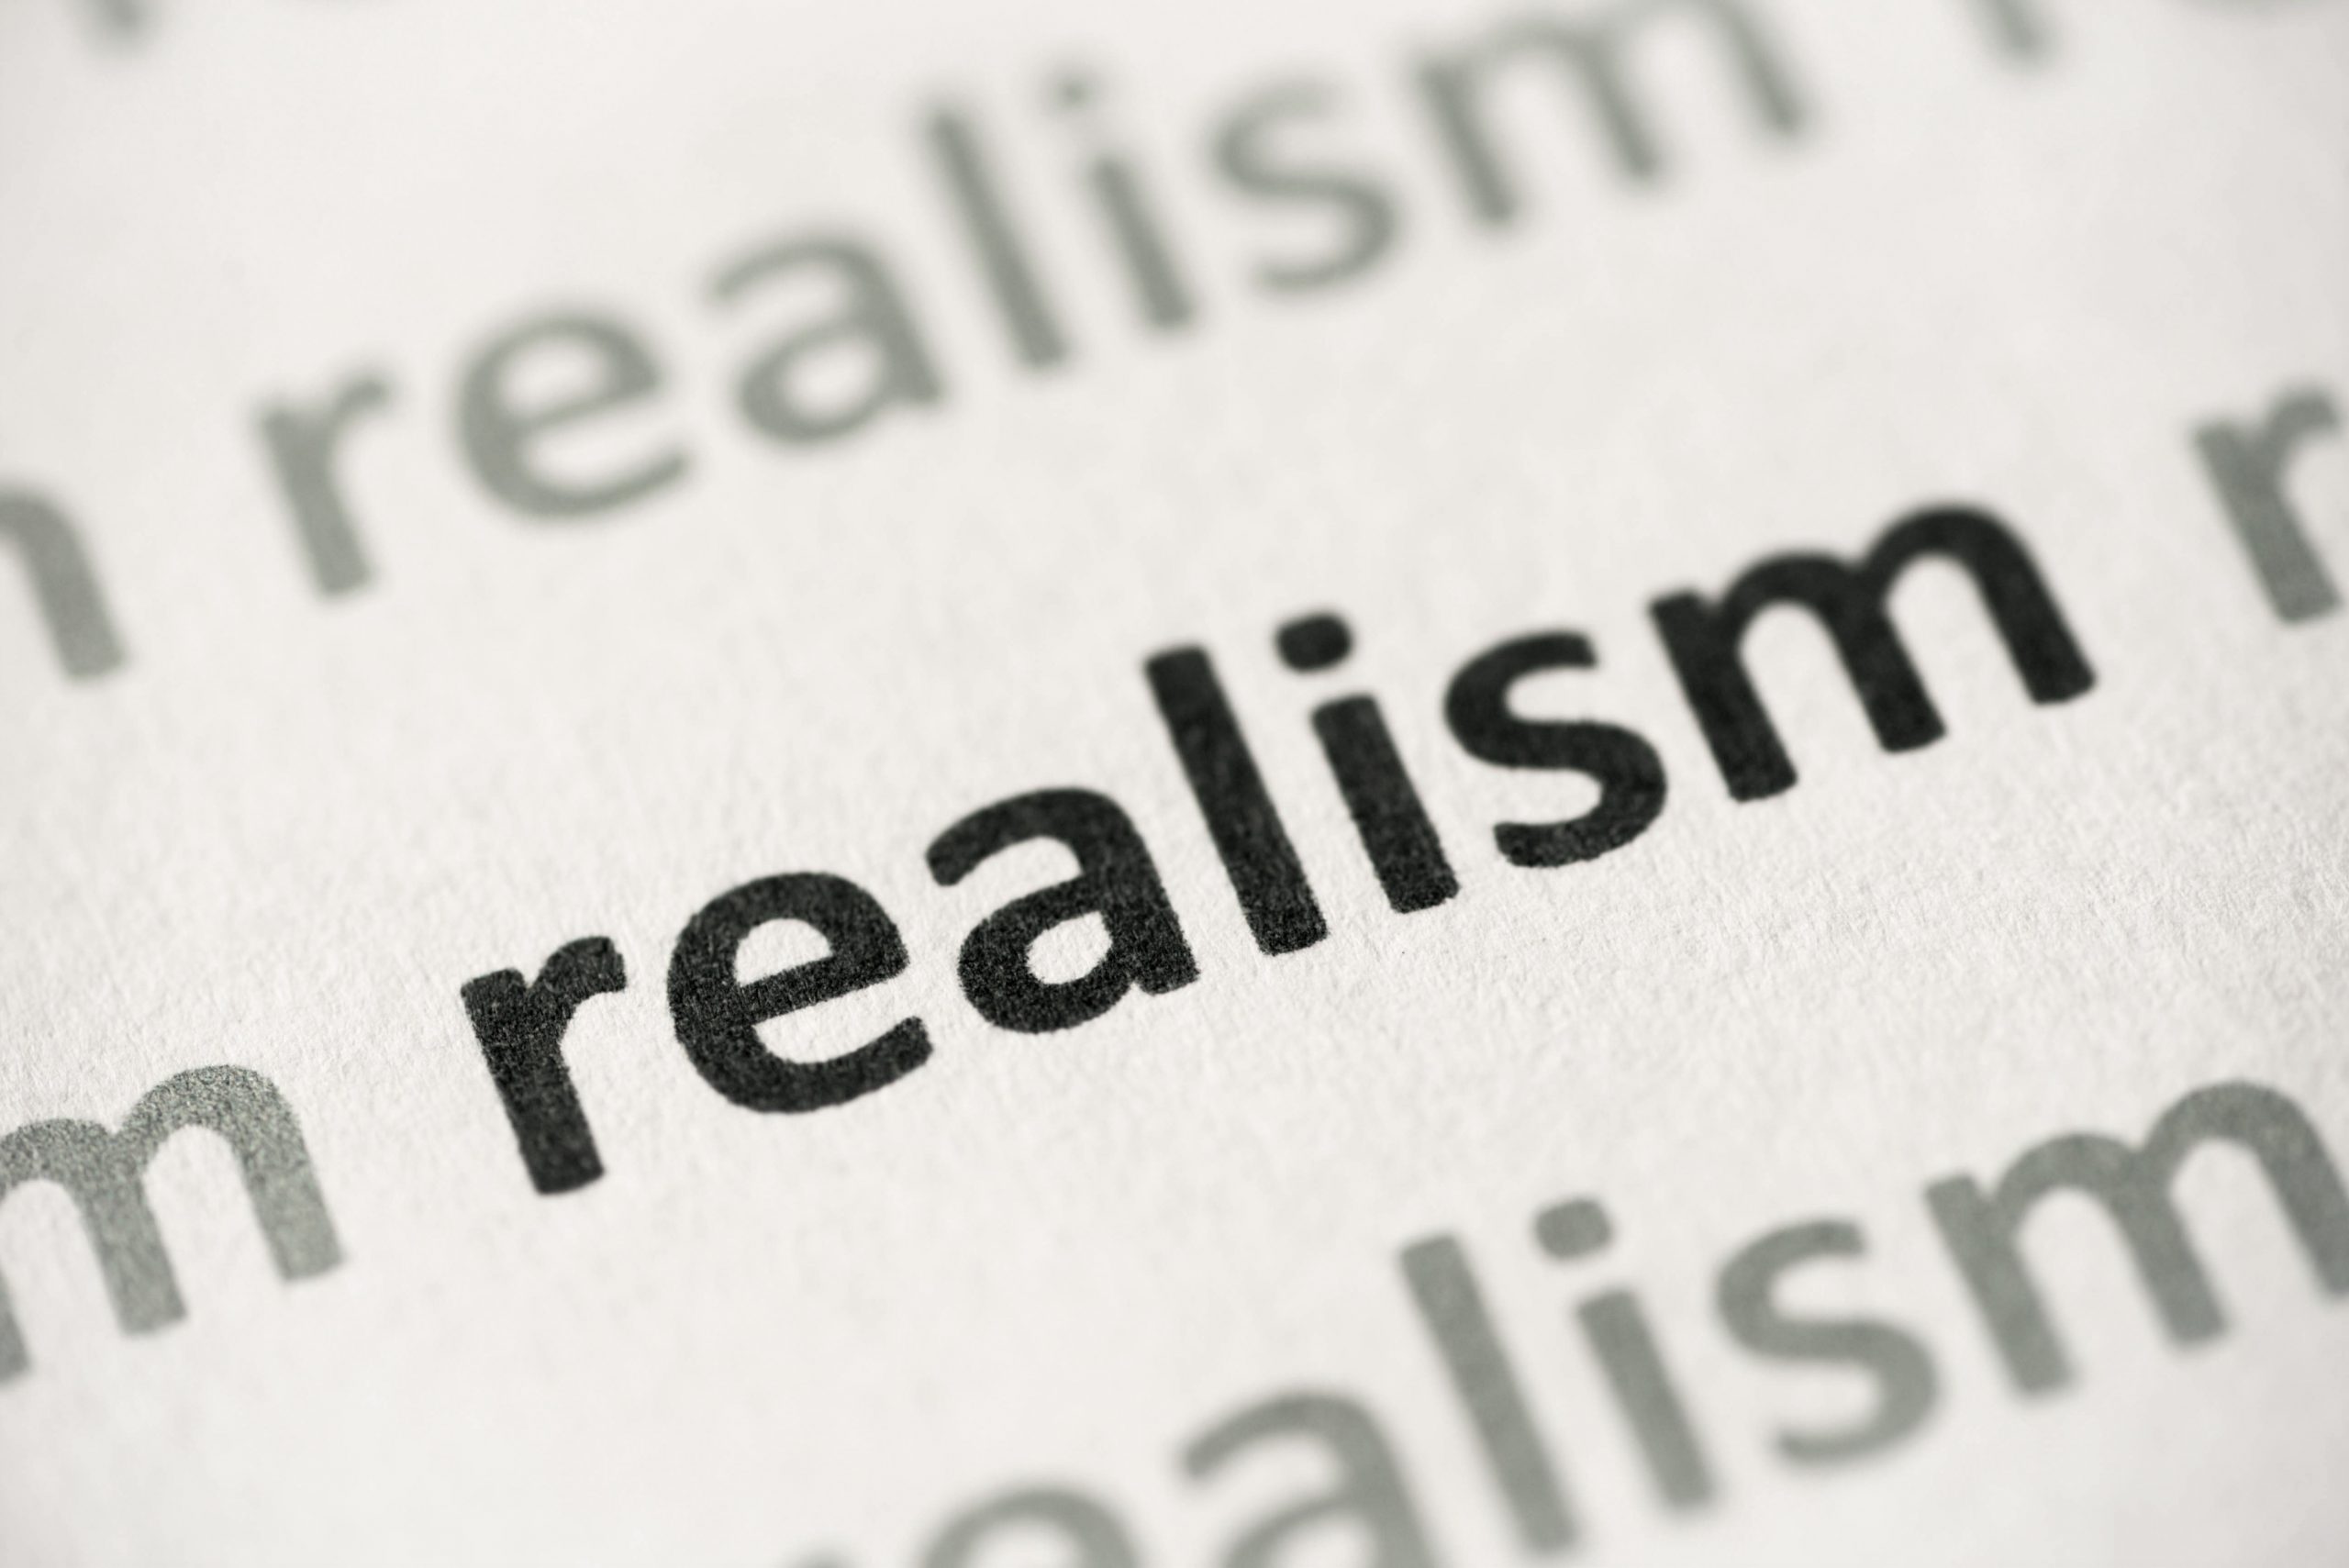 word realism printed on paper macro